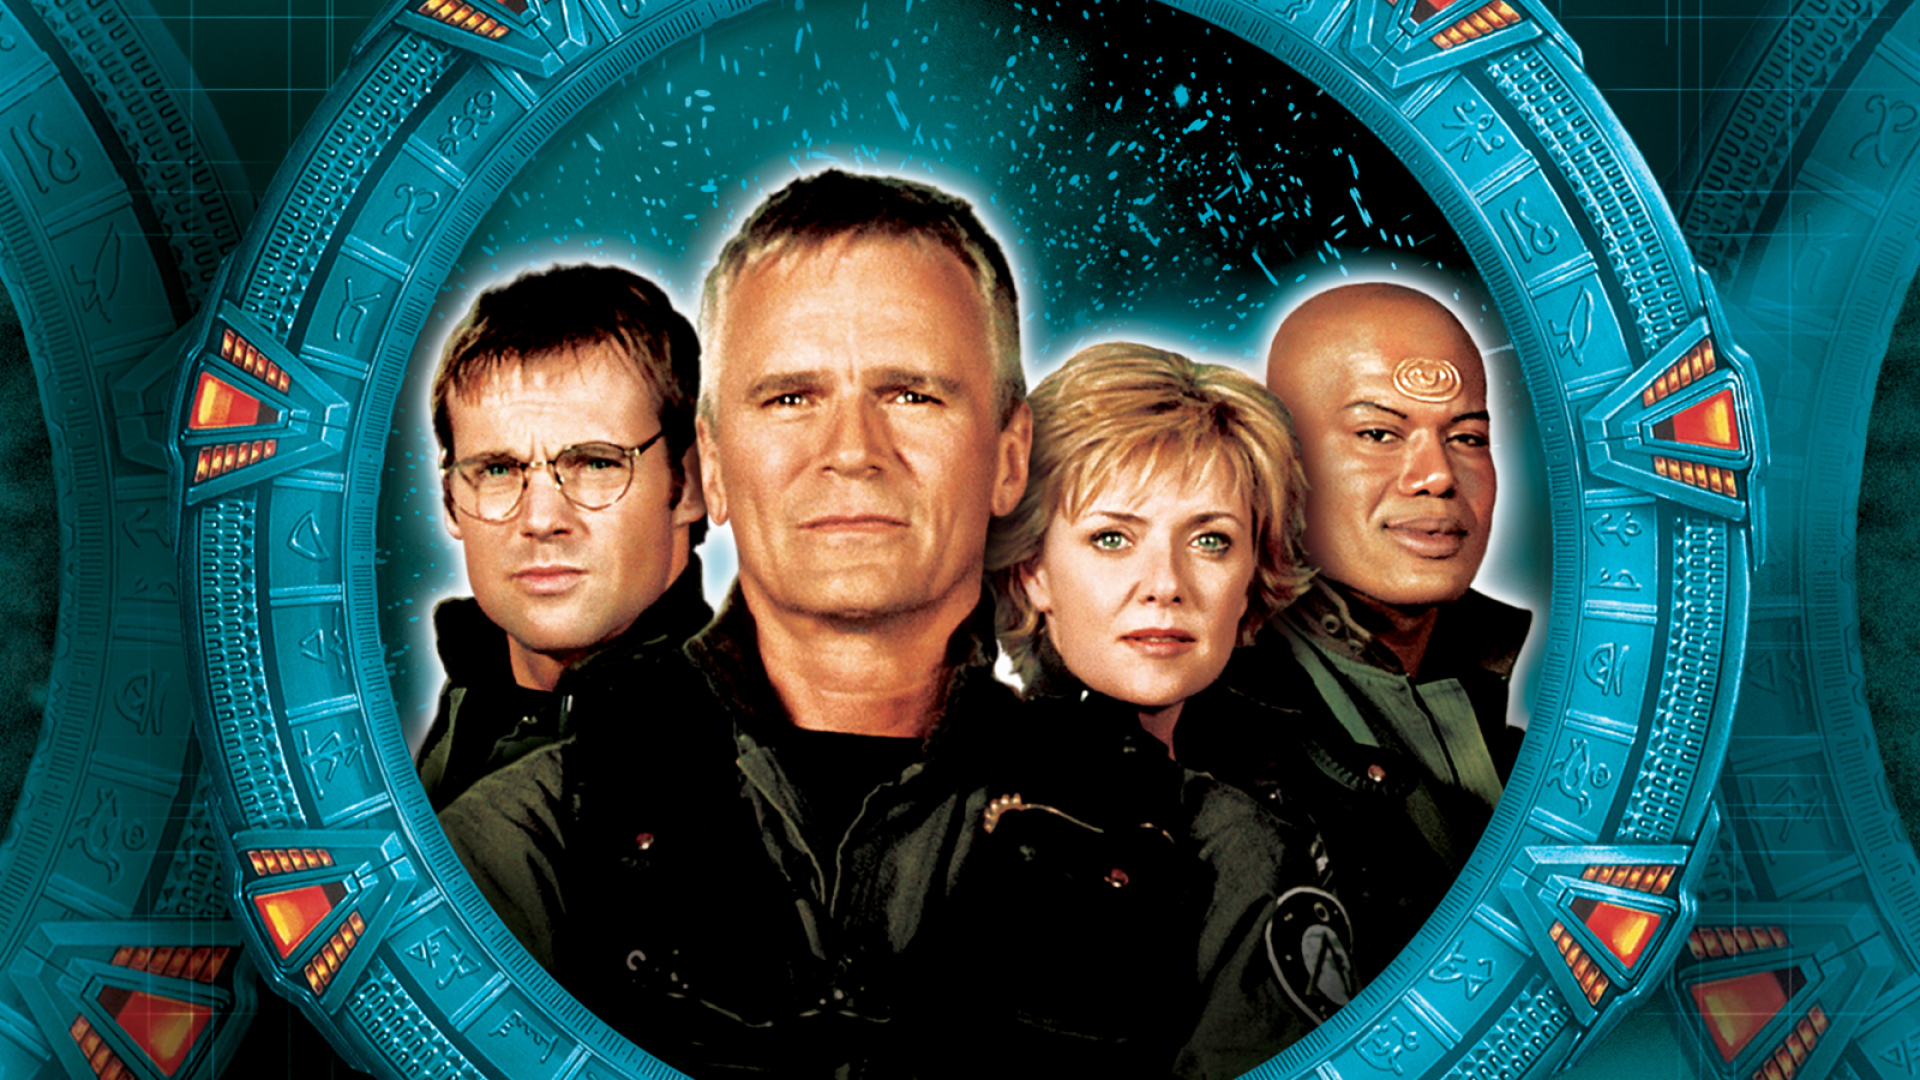 Stargate Sg-1 - Stargate Sg1 Season 7 , HD Wallpaper & Backgrounds